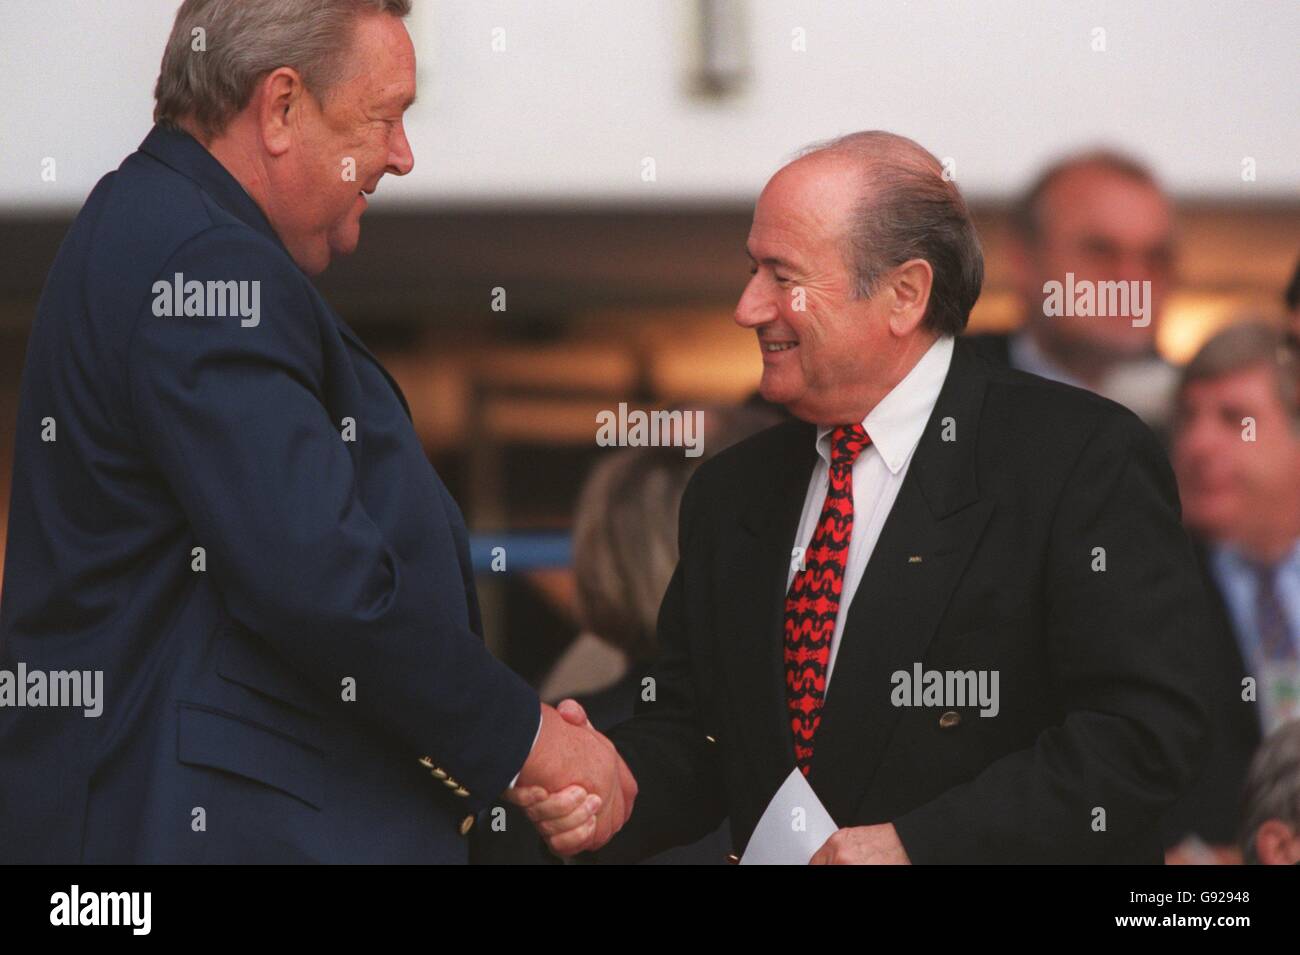 UEFA President Lennart Johansson (left) shakes hands with FIFA President Sepp Blatter (right) Stock Photo